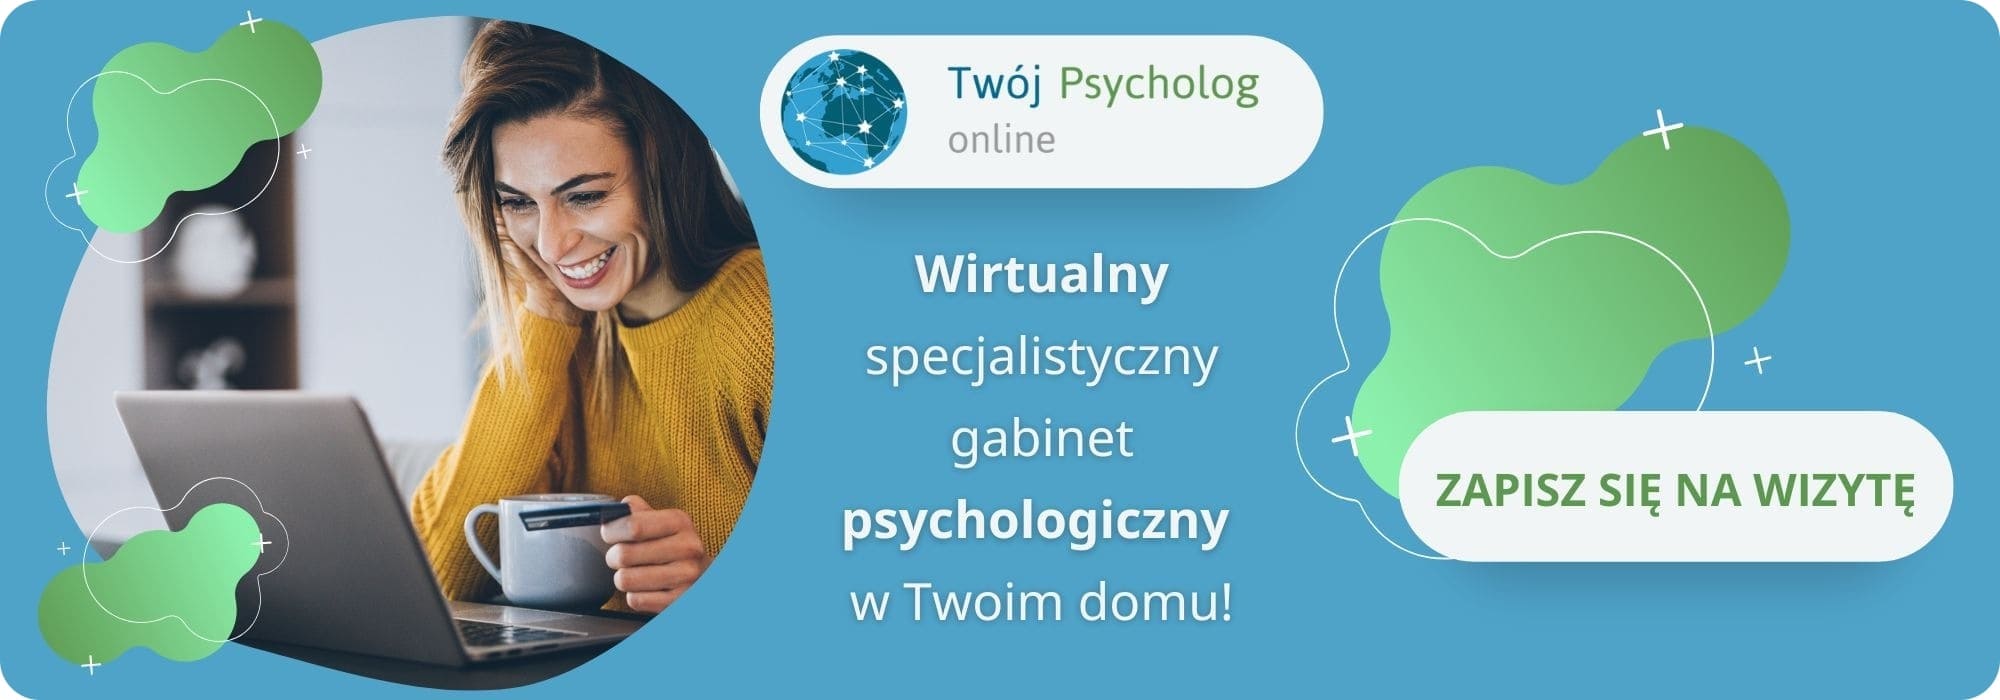 poznaj zespół psychologów w Twój Psycholog online